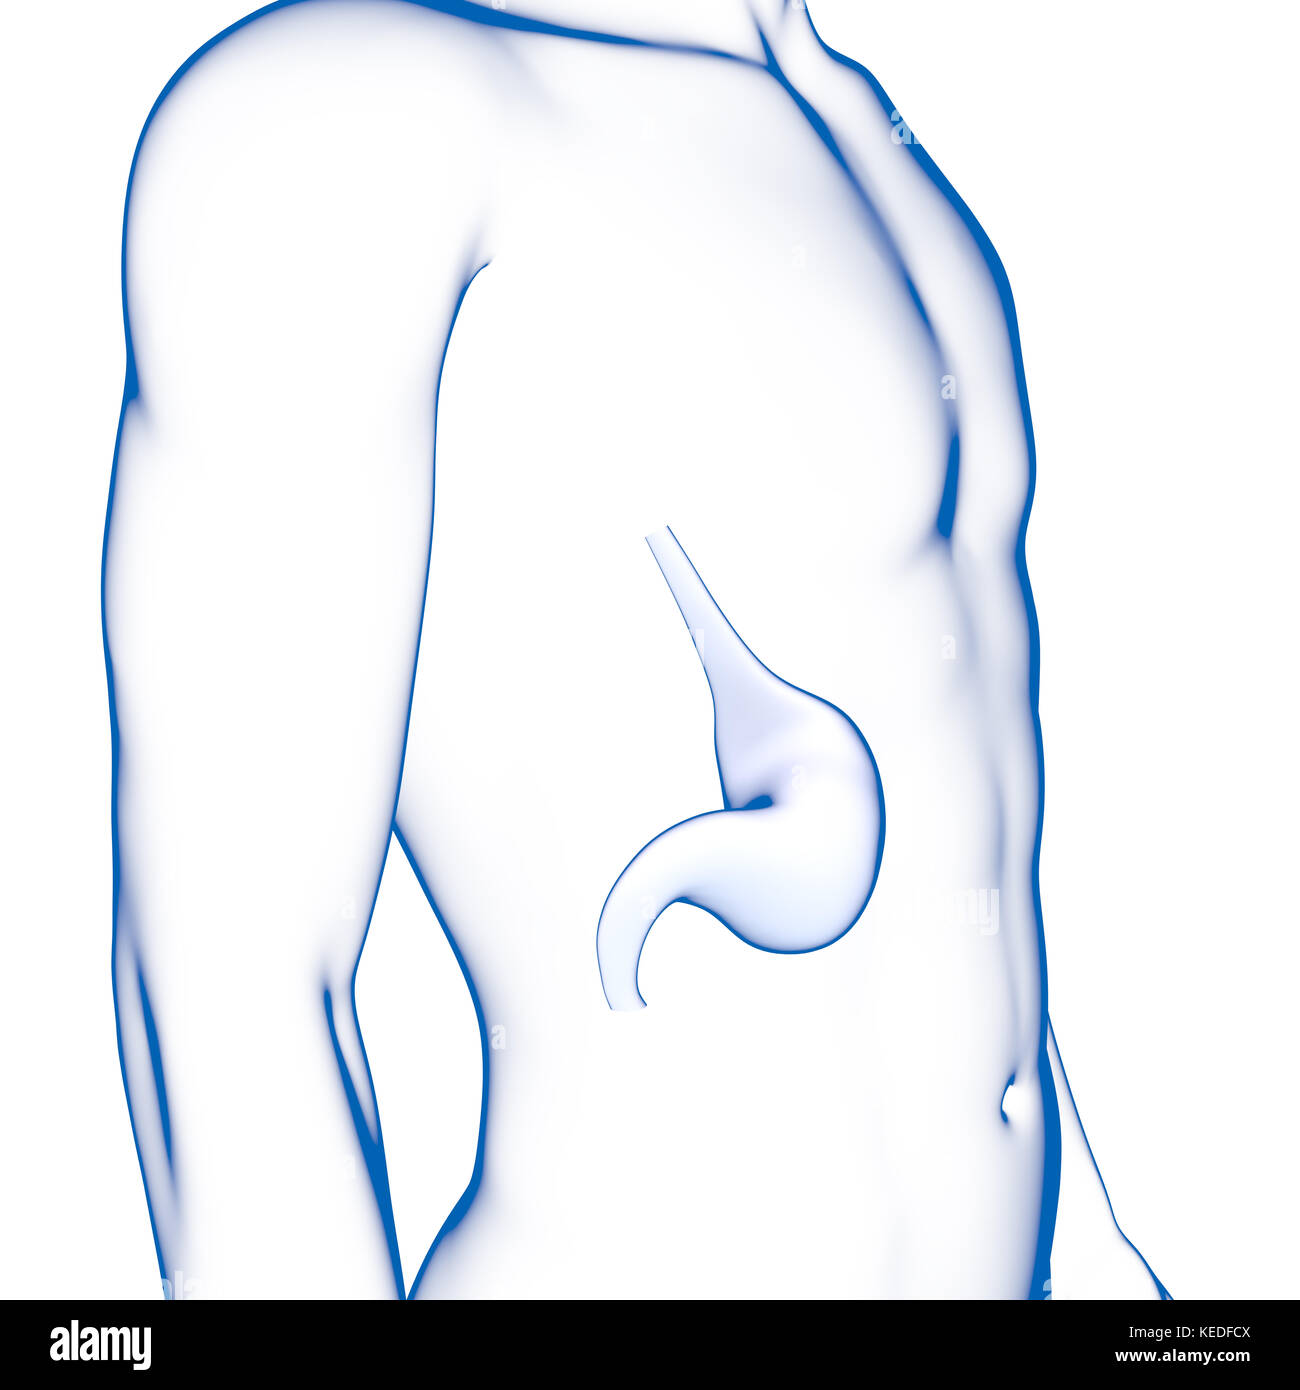 Les droits de l'estomac, illustration médicale Banque D'Images